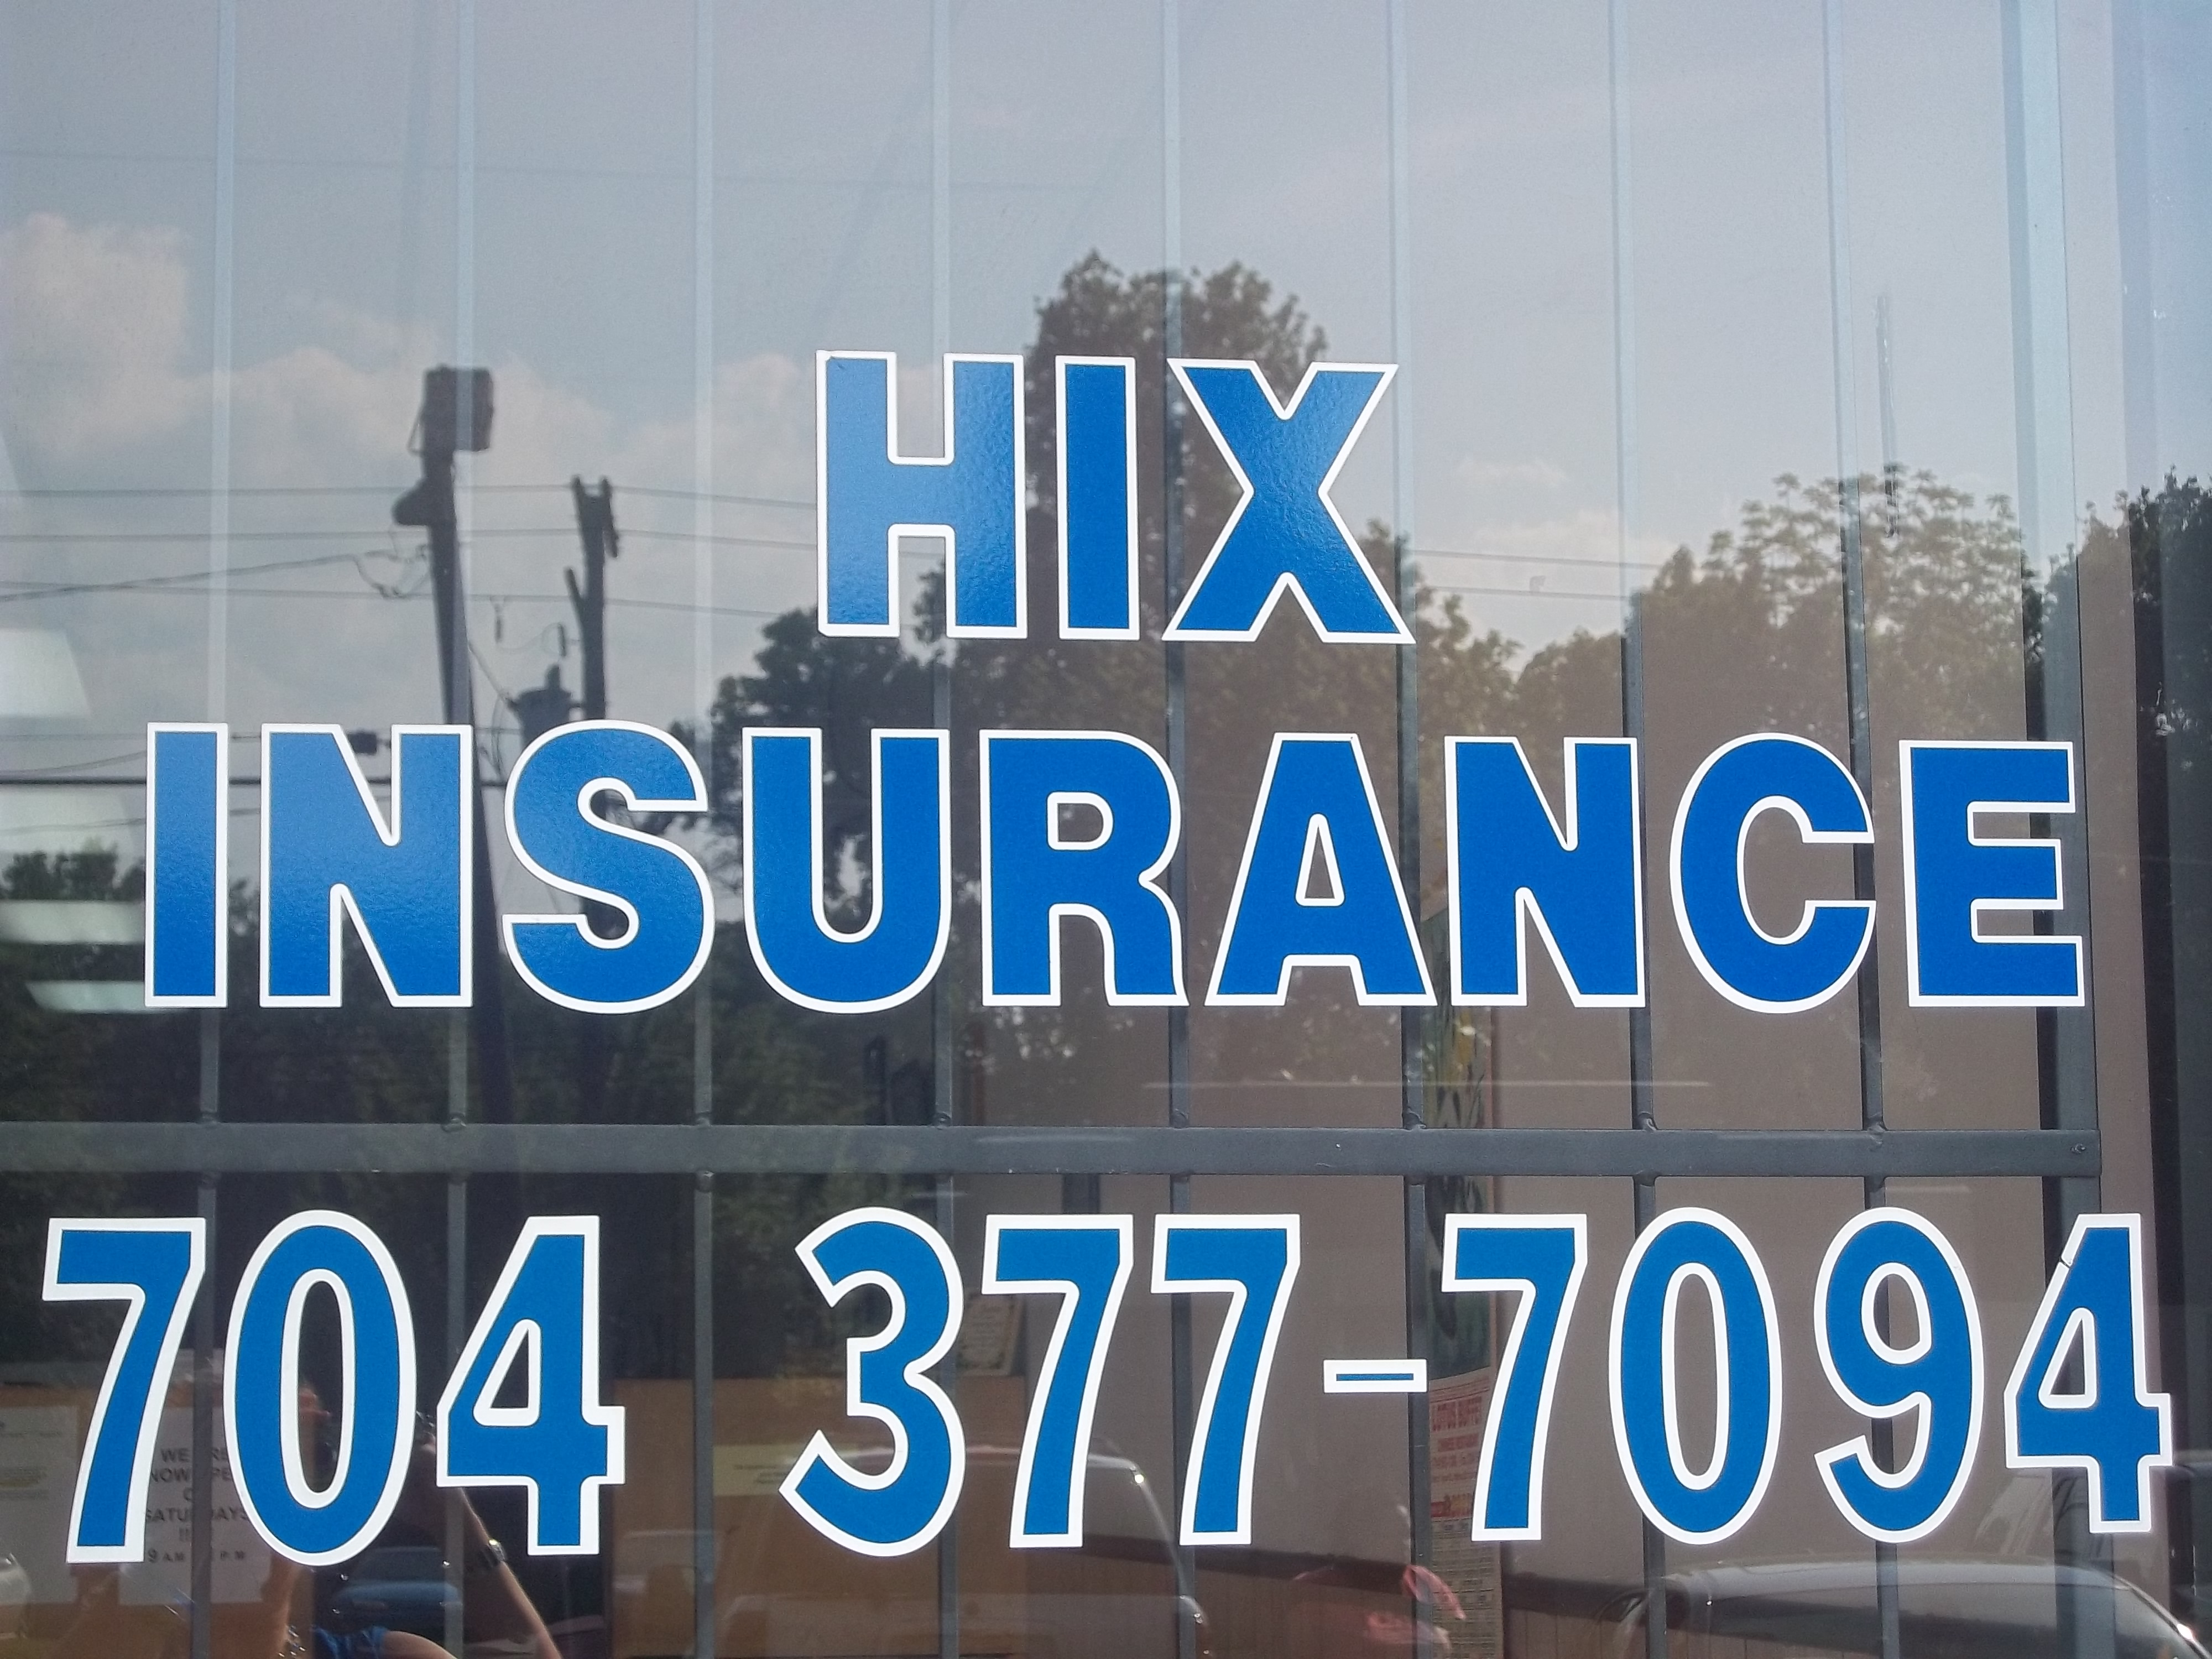 Hicks insurance information